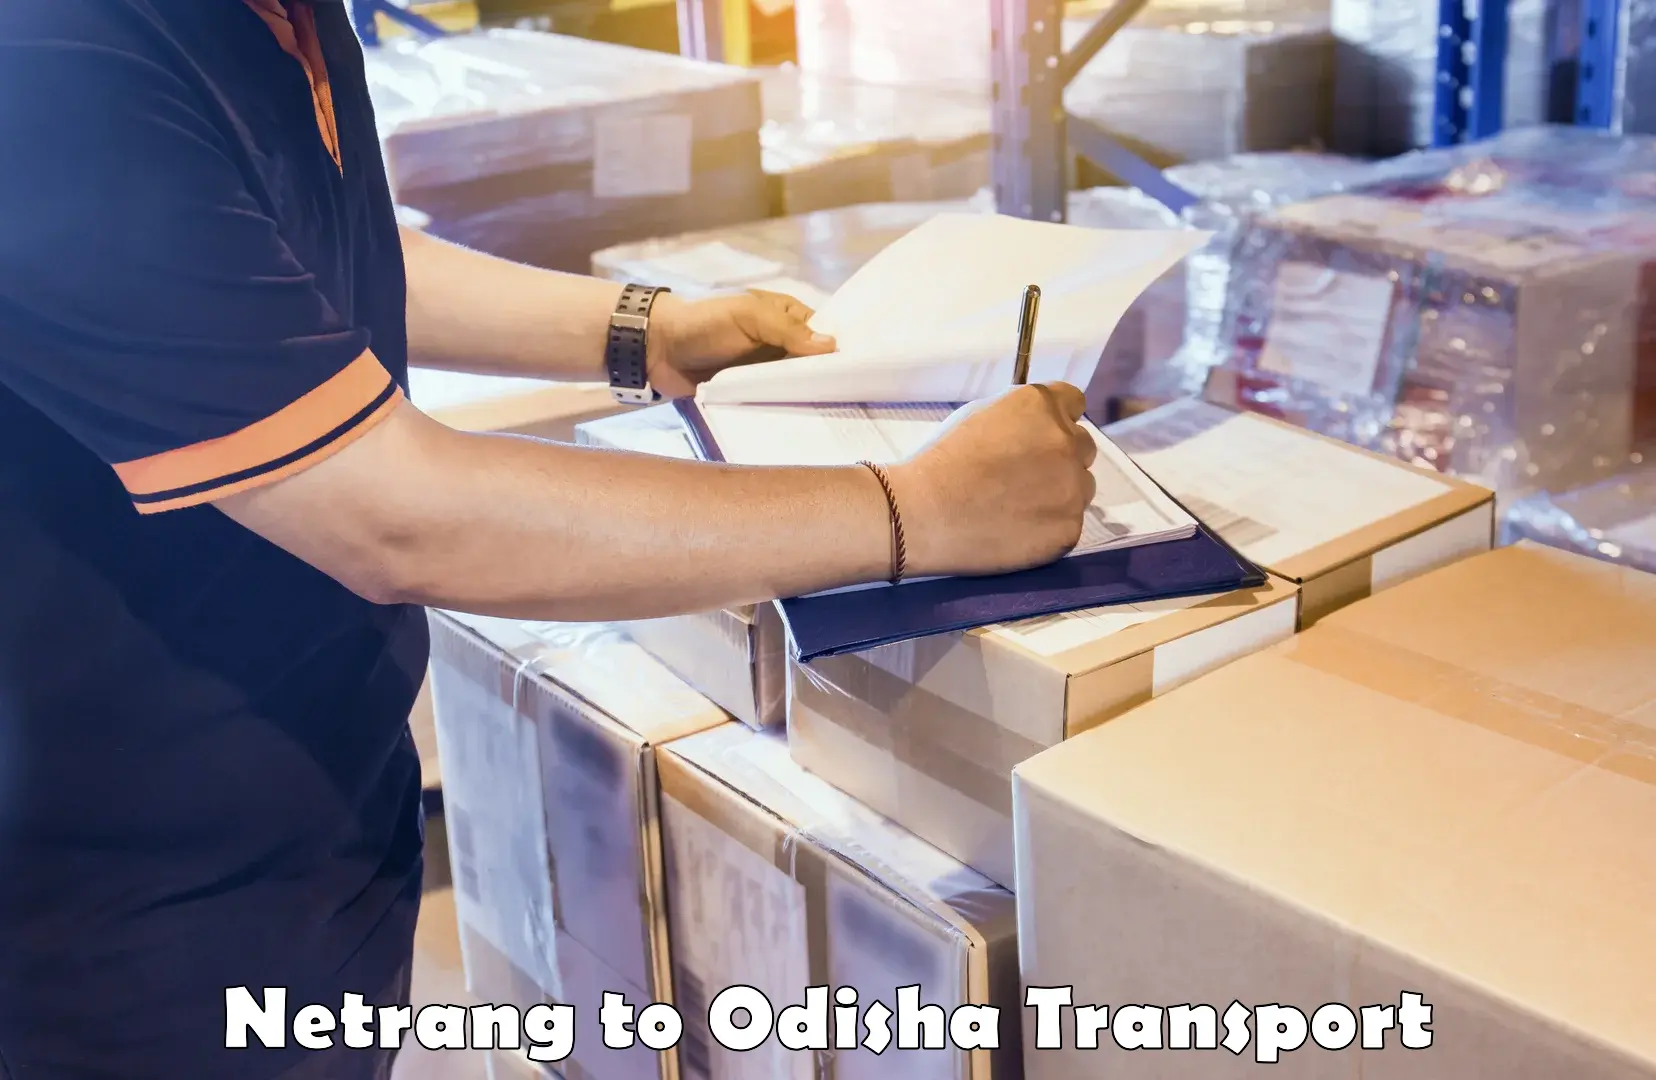 Nearby transport service Netrang to Odisha